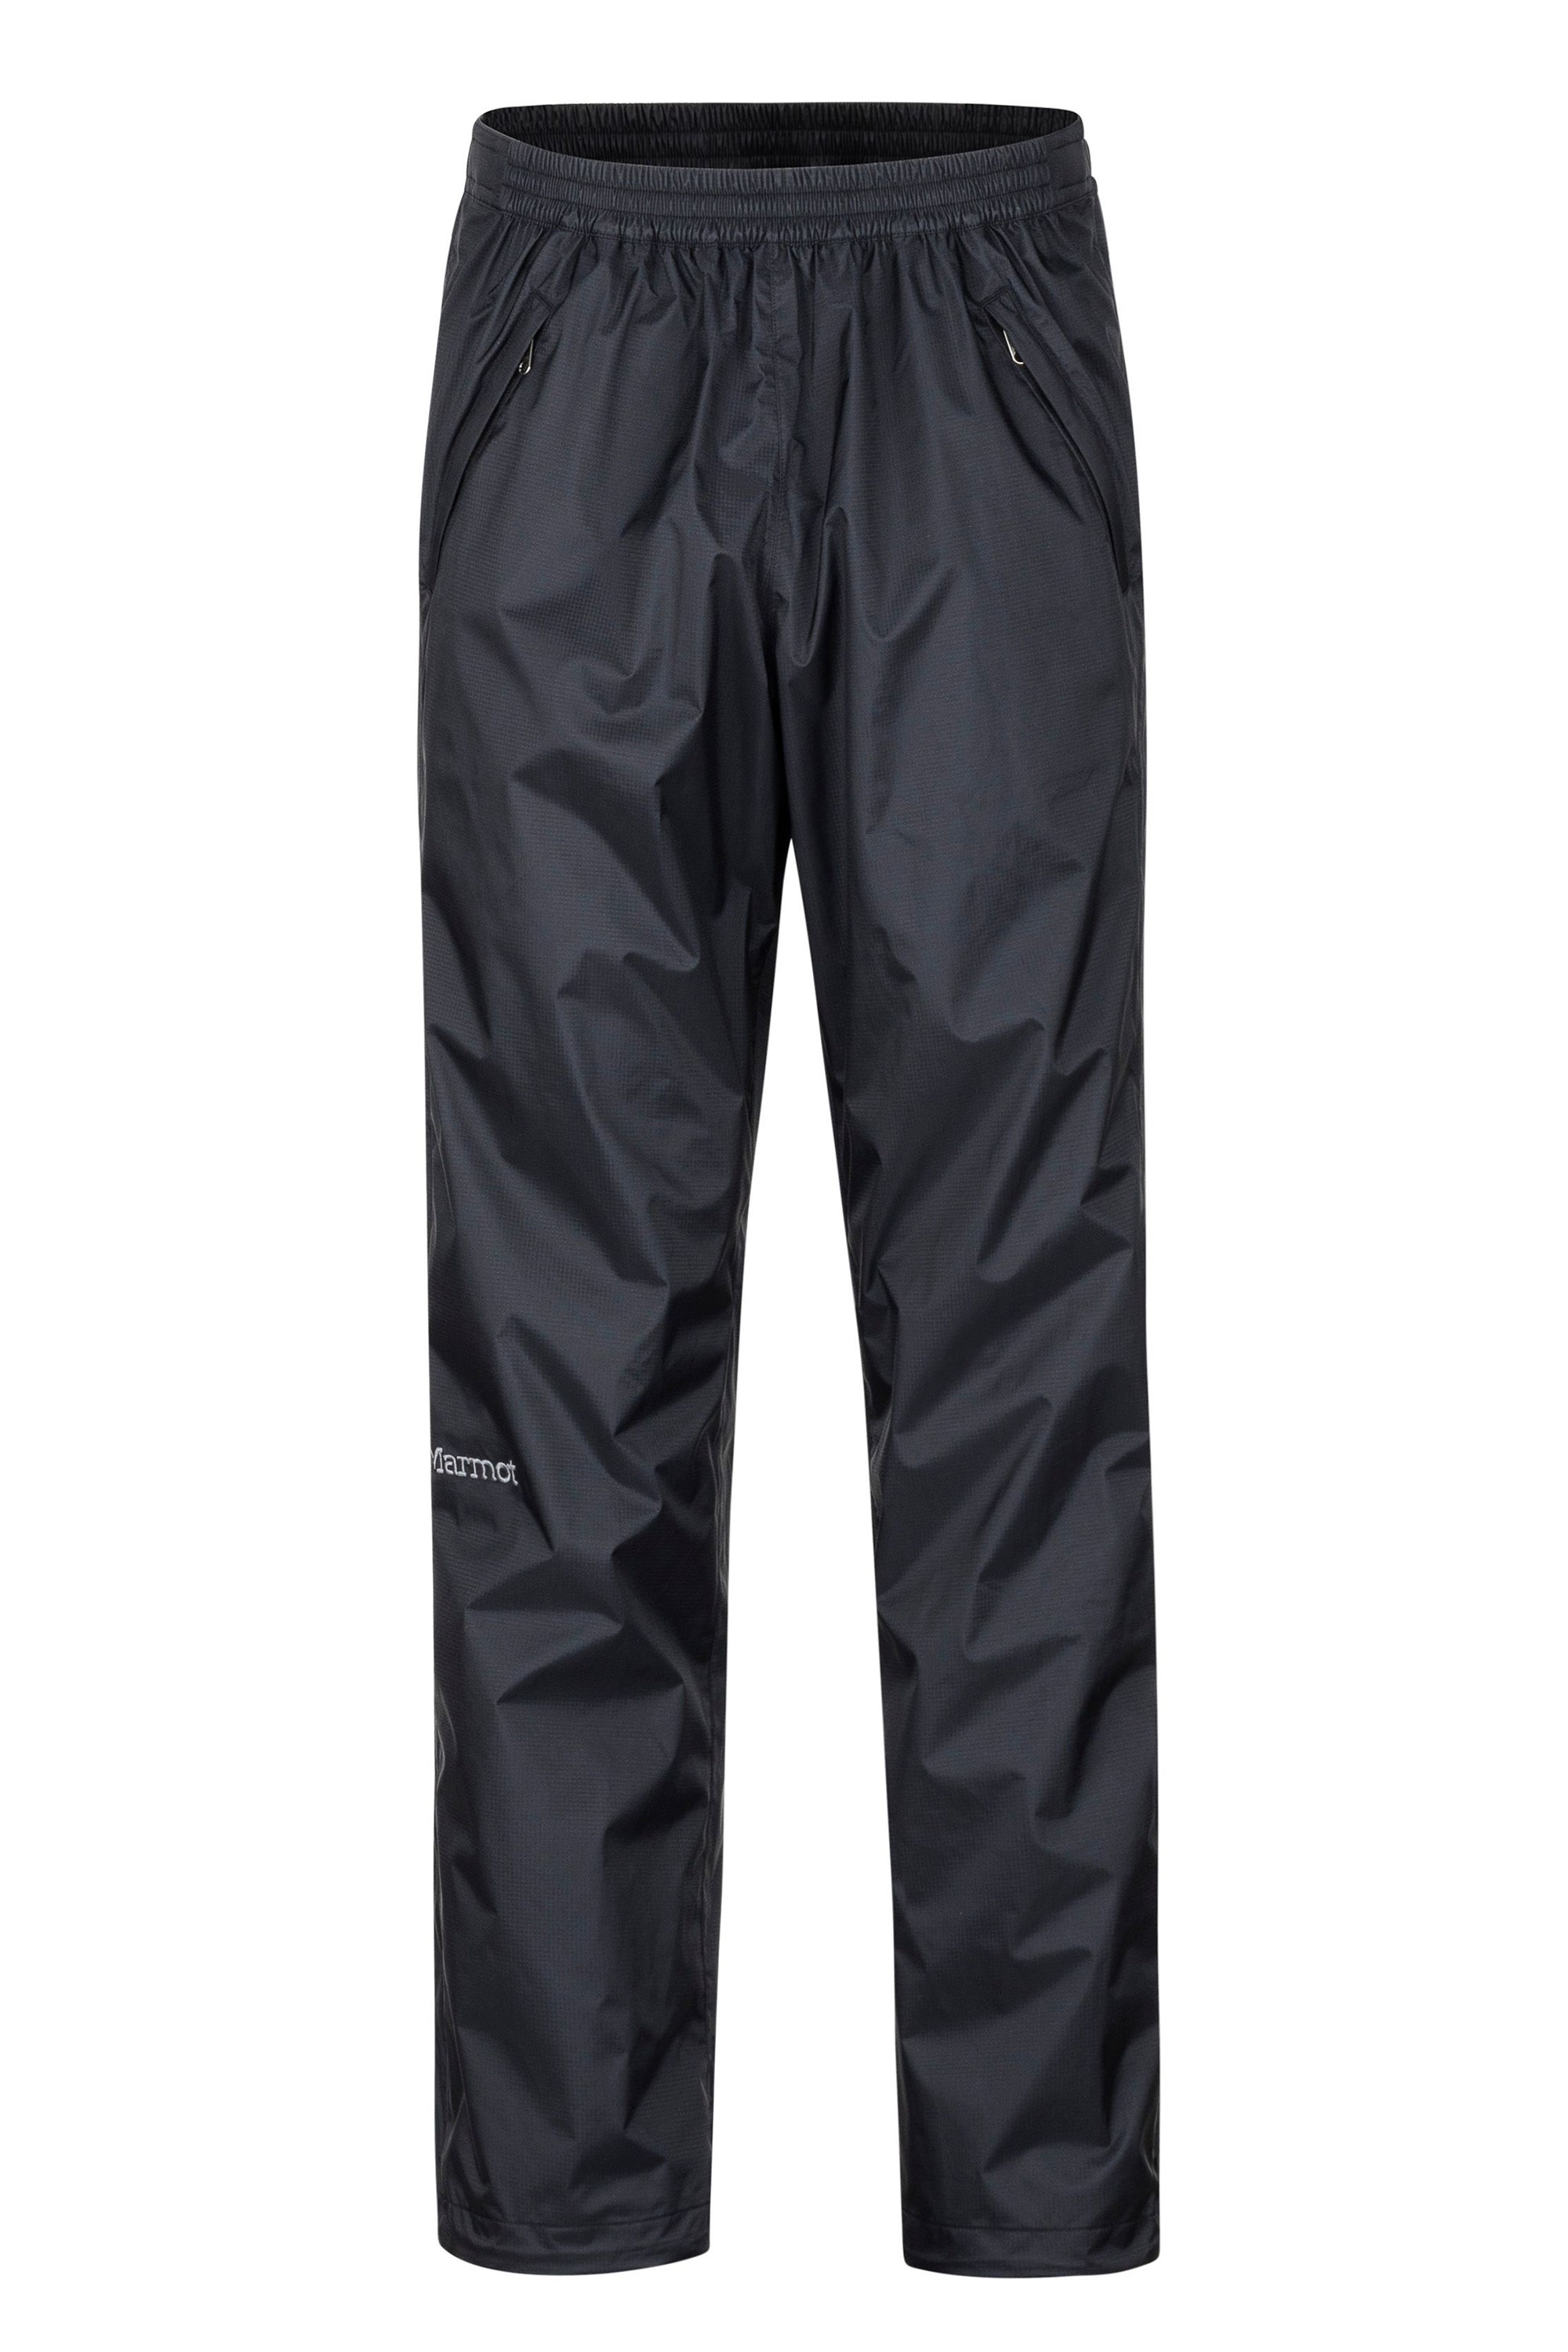 Precip Eco Mens Full-zip Trousers - Black